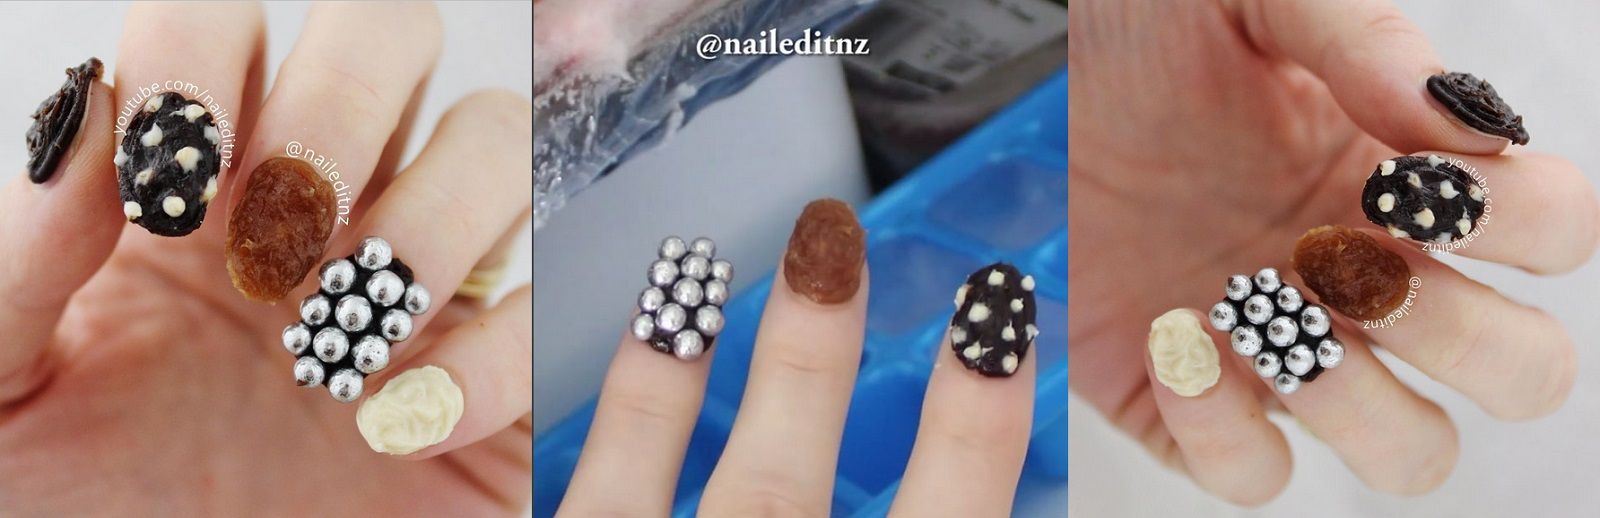 Chocolate Nail, il nuovo trend per unghie da mangiare